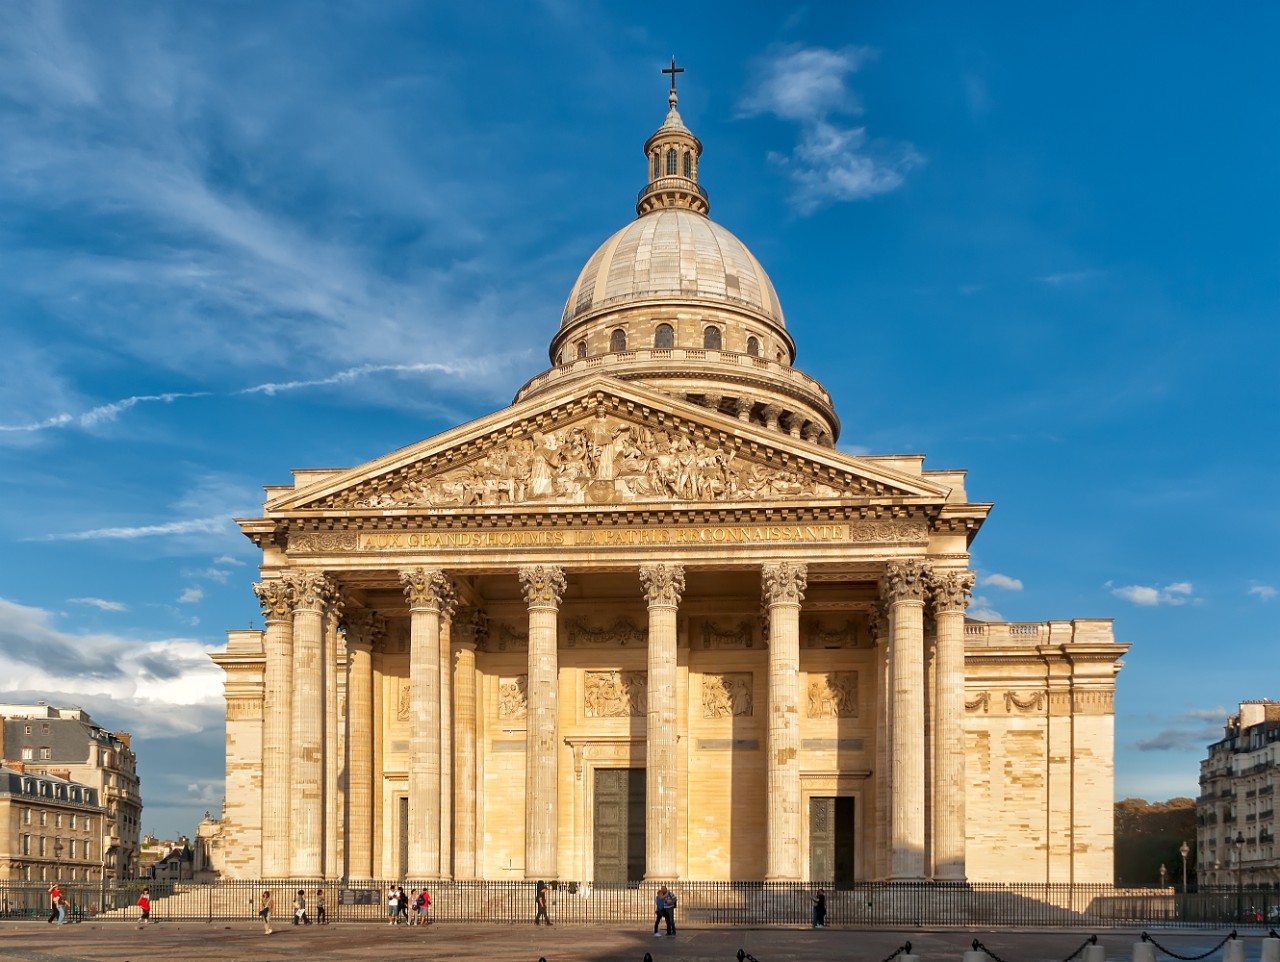 The Panthéon © Nikitin Mikhail / Adobe Stock